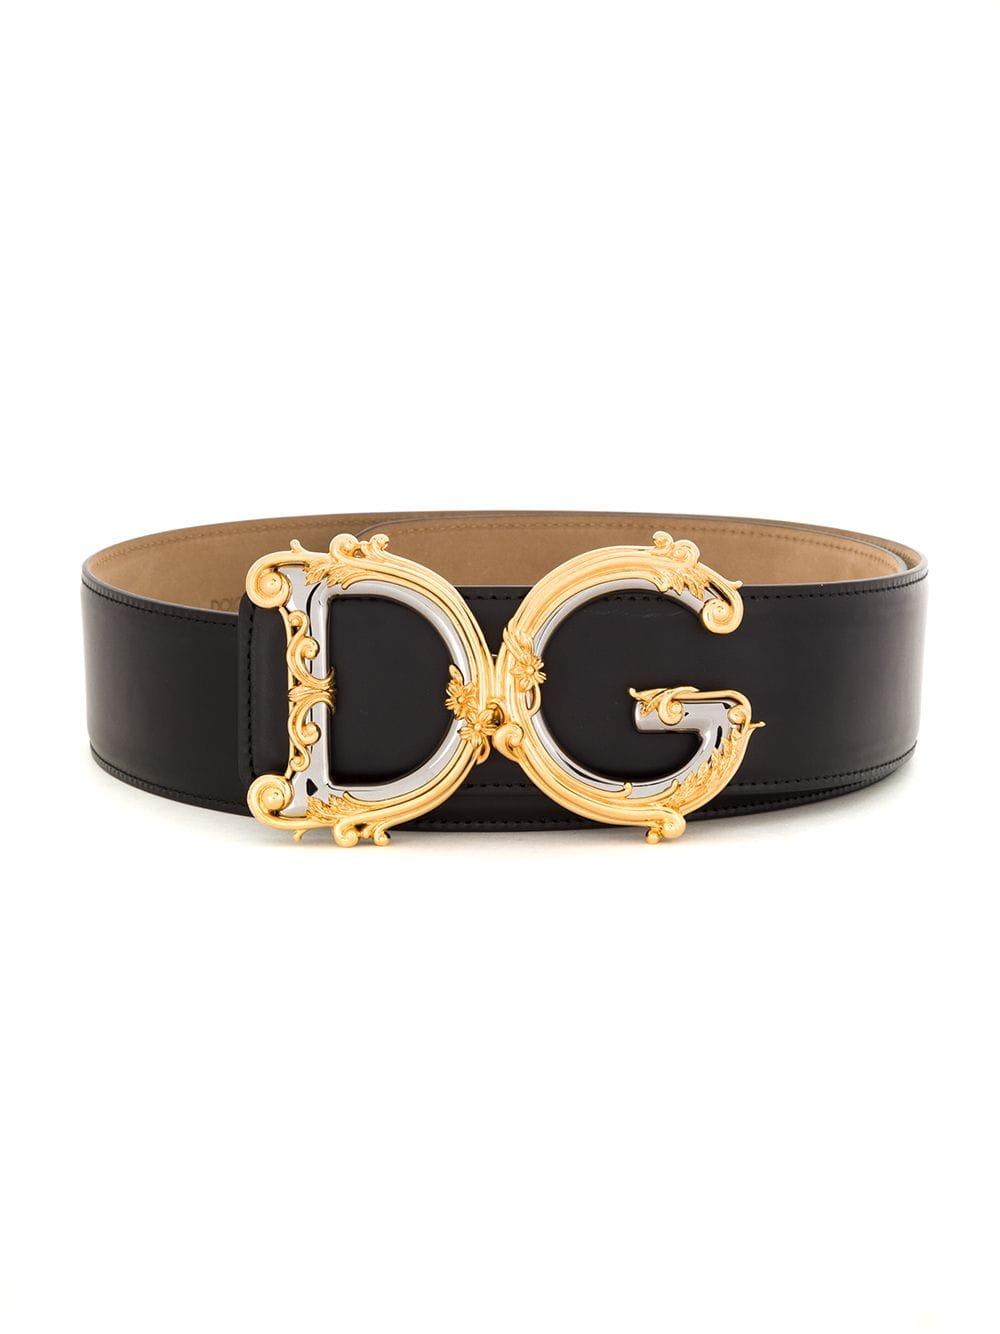 Dolce & Gabbana Leather Embellished Buckle Belt in Black - Lyst